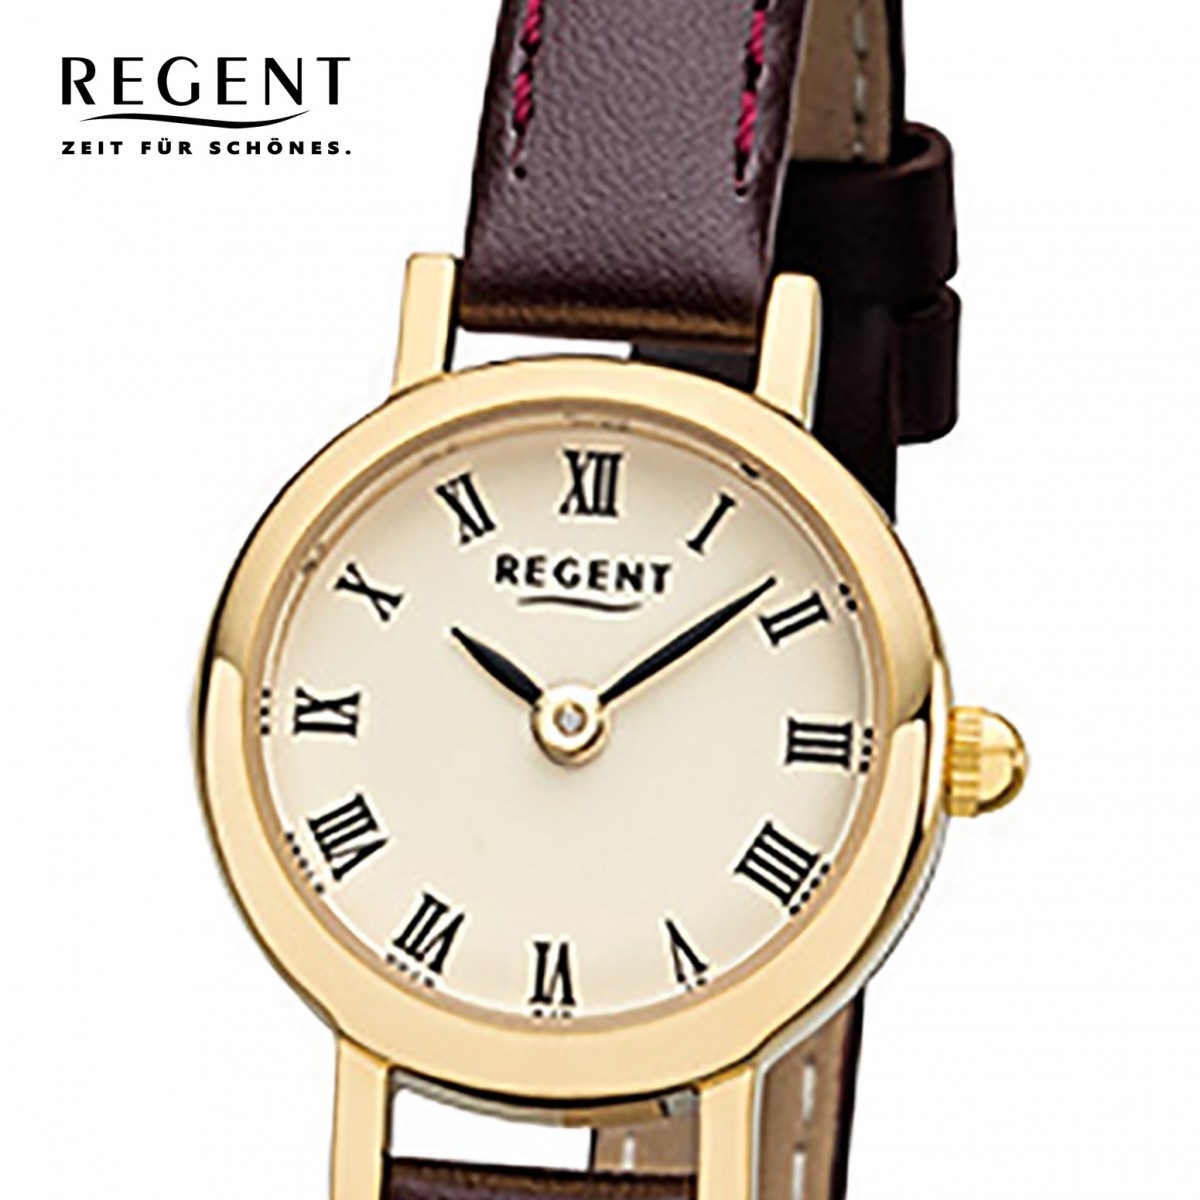 URF978 Regent Leder-Armband Mini braun Damen-Armbanduhr F-978 Quarz-Uhr